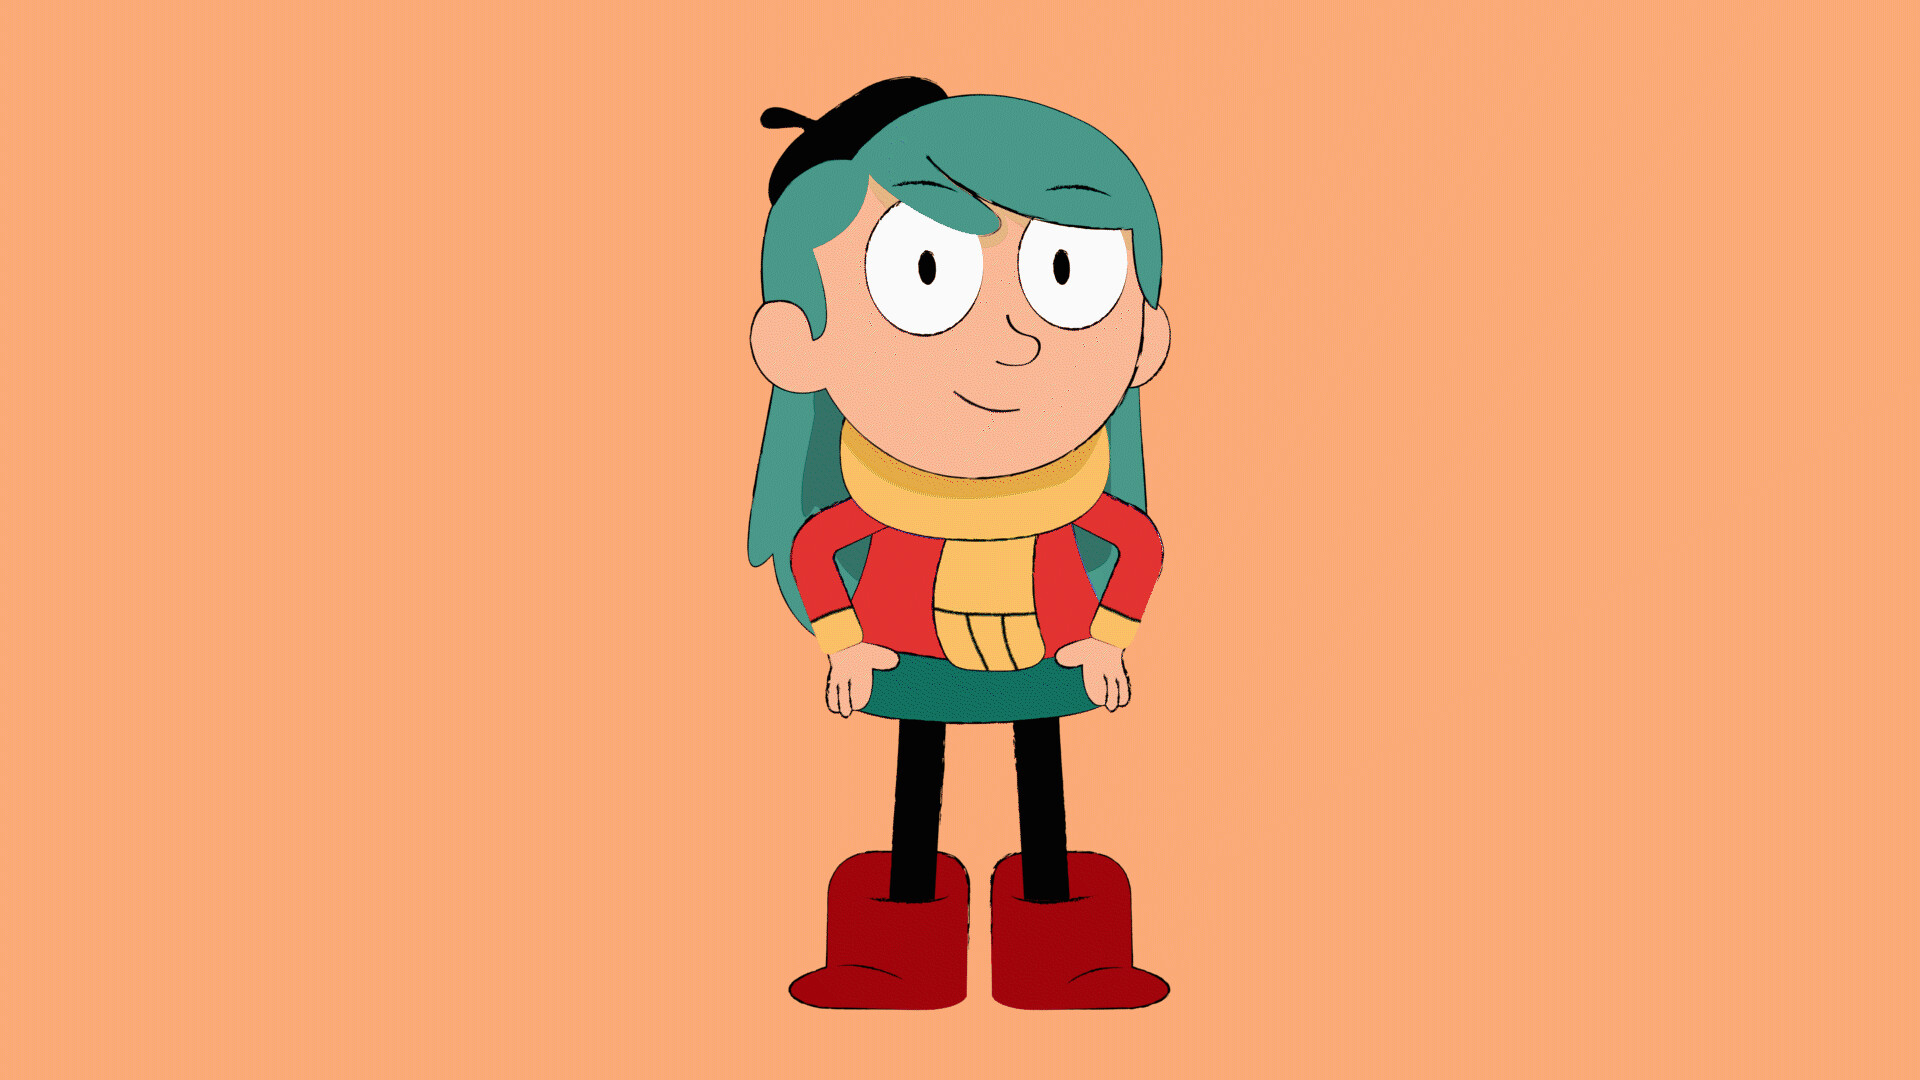 Hilda (character) - wide 6